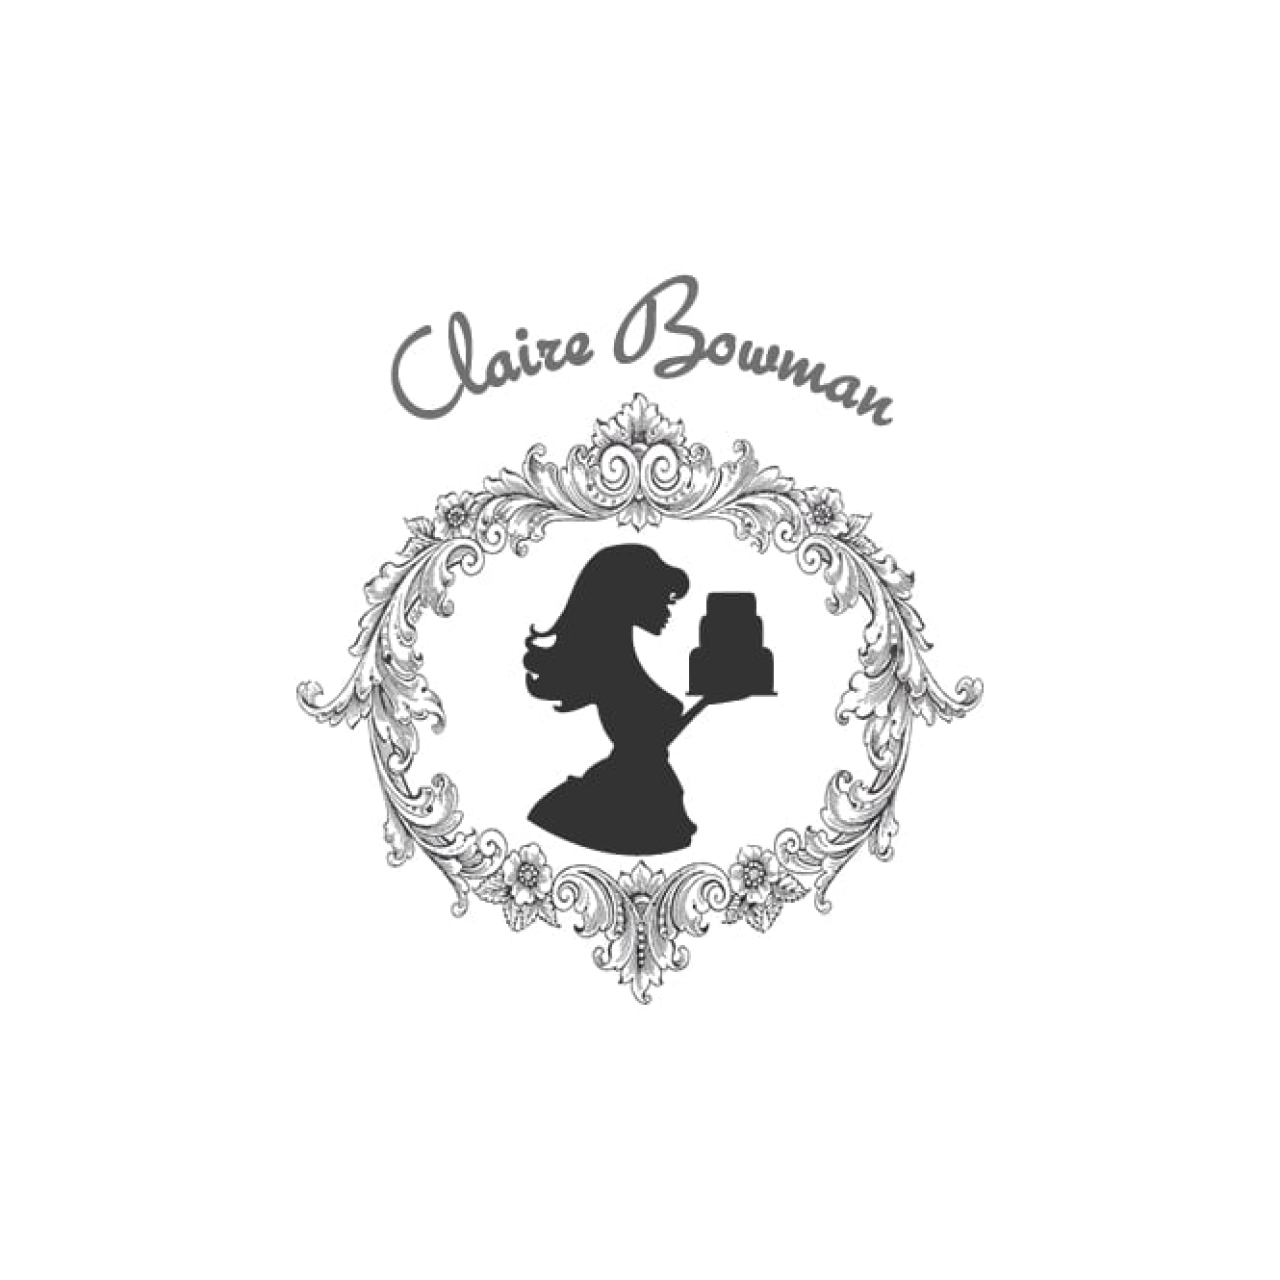 Claire Bowman - Cake Lace Mat Sequins